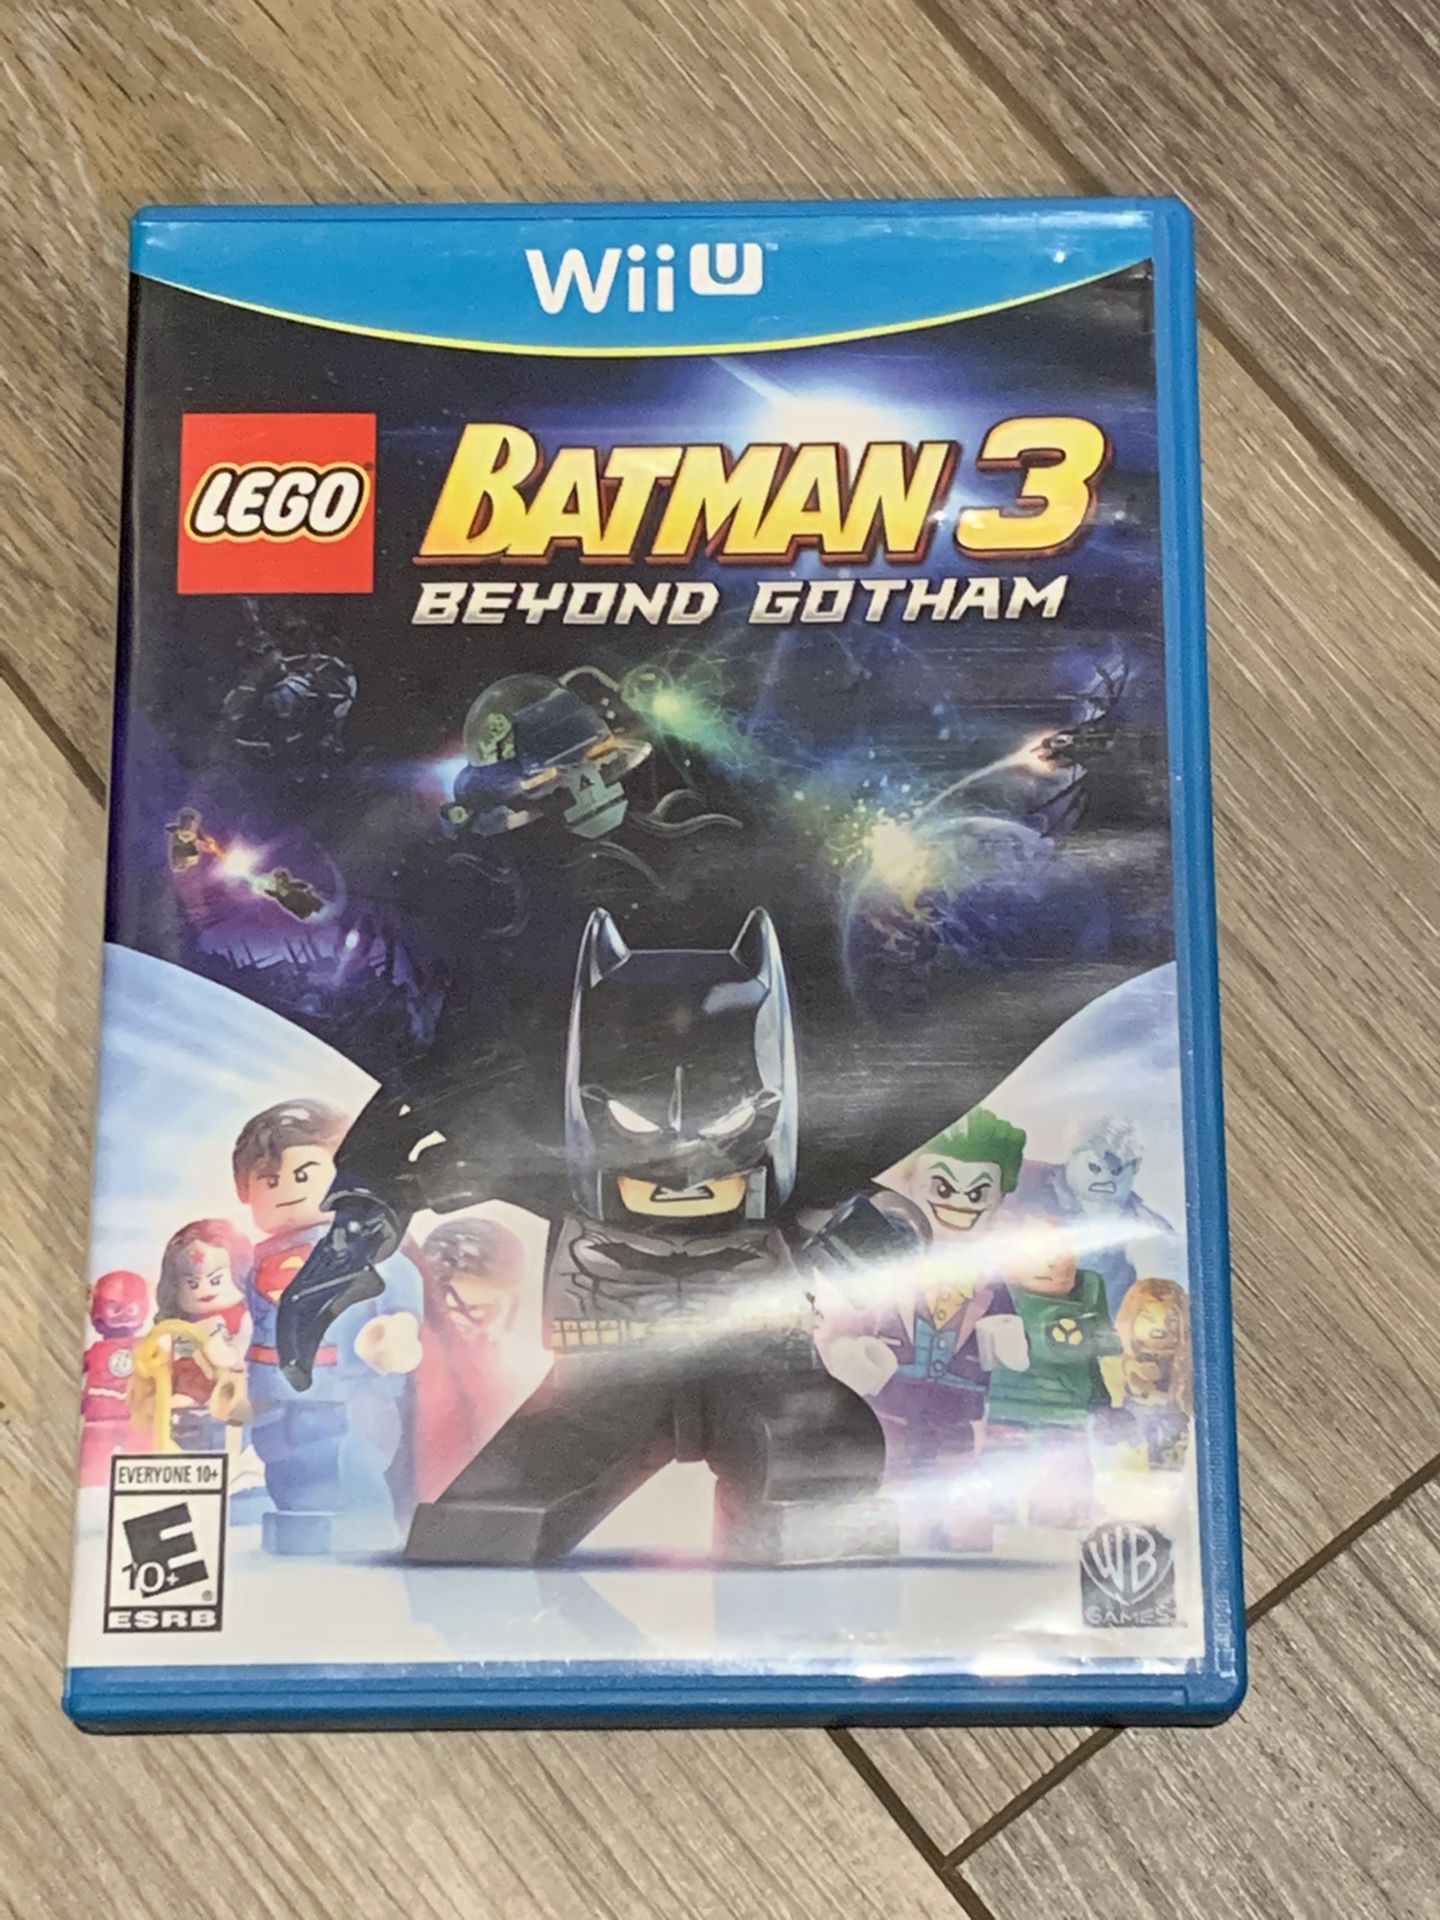 LEGO Batman 3 [ Beyond Gotham ] (Wii U) NEW